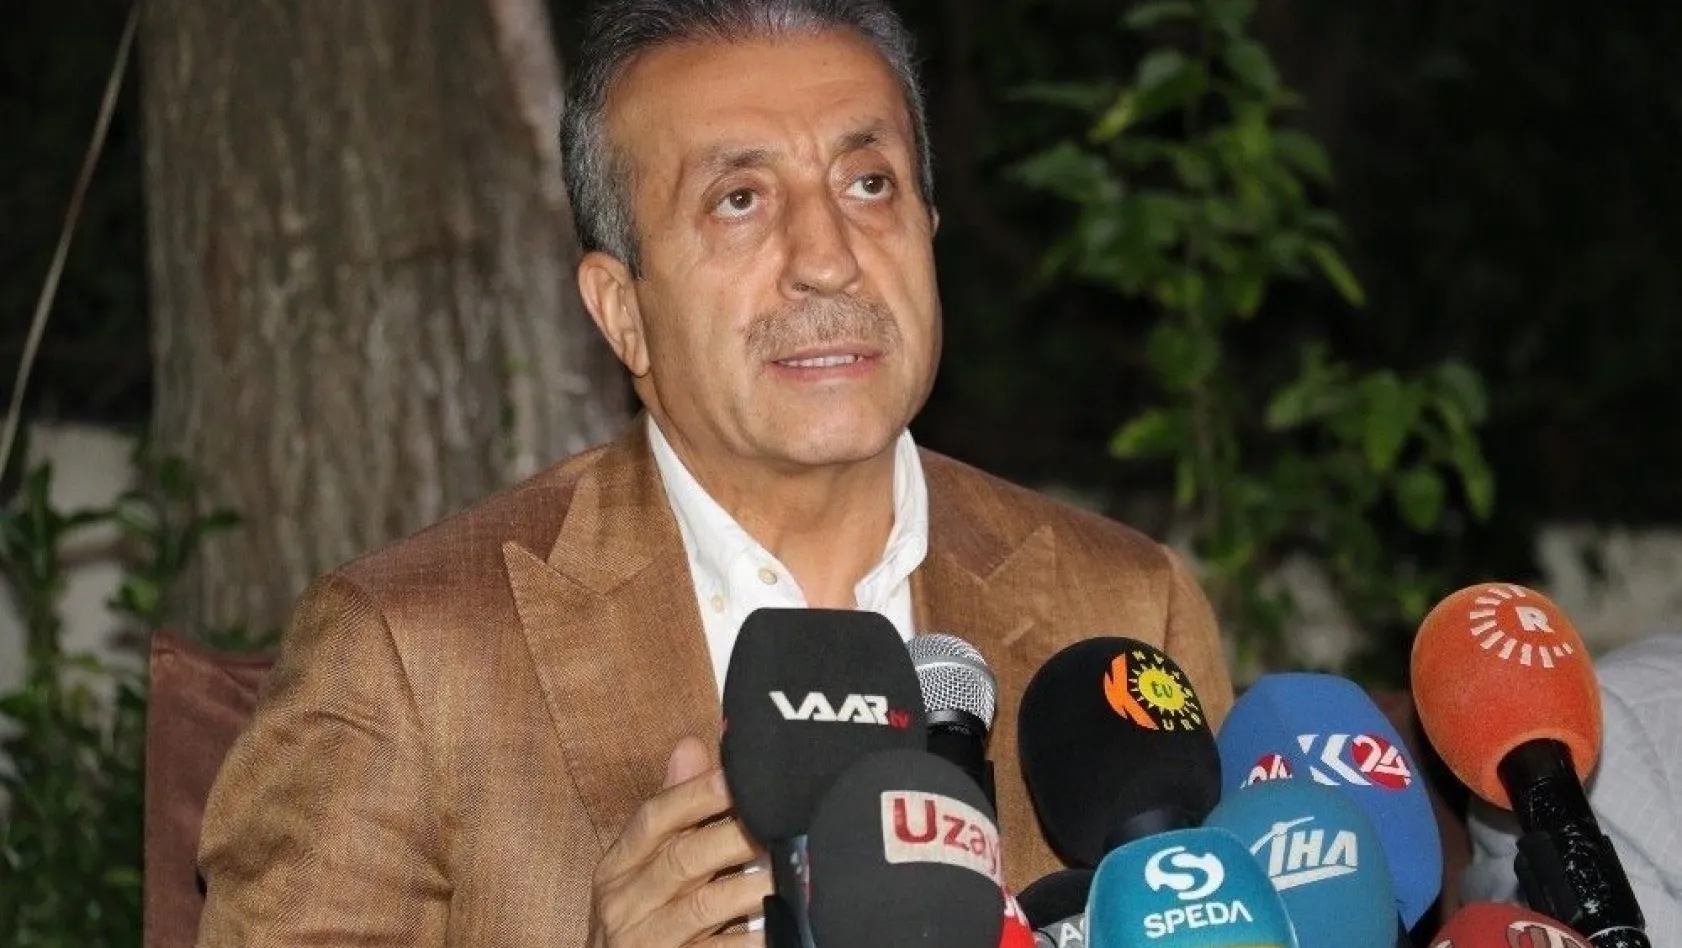 AK Parti Genel Başkan Yardımcısı Mehdi Eker: 'Erdoğan itiraz ettiği için hedef'
